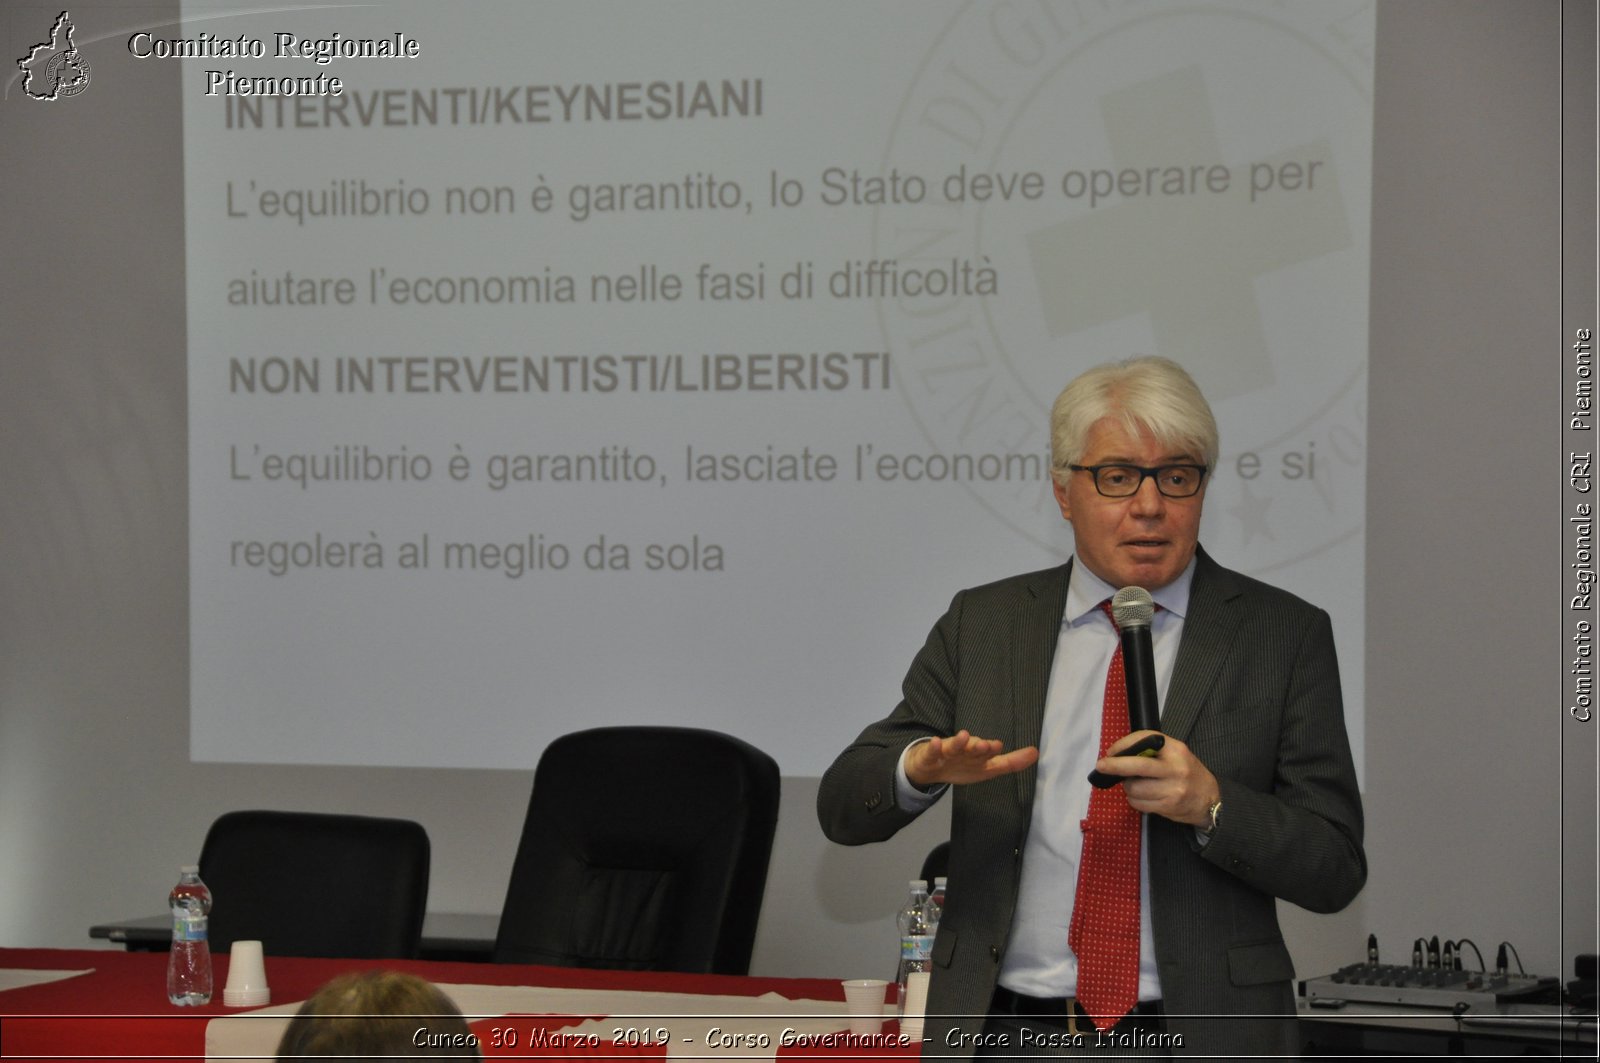 Cuneo 30 Marzo 2019 - Corso Governance - Croce Rossa Italiana - Comitato Regionale del Piemonte